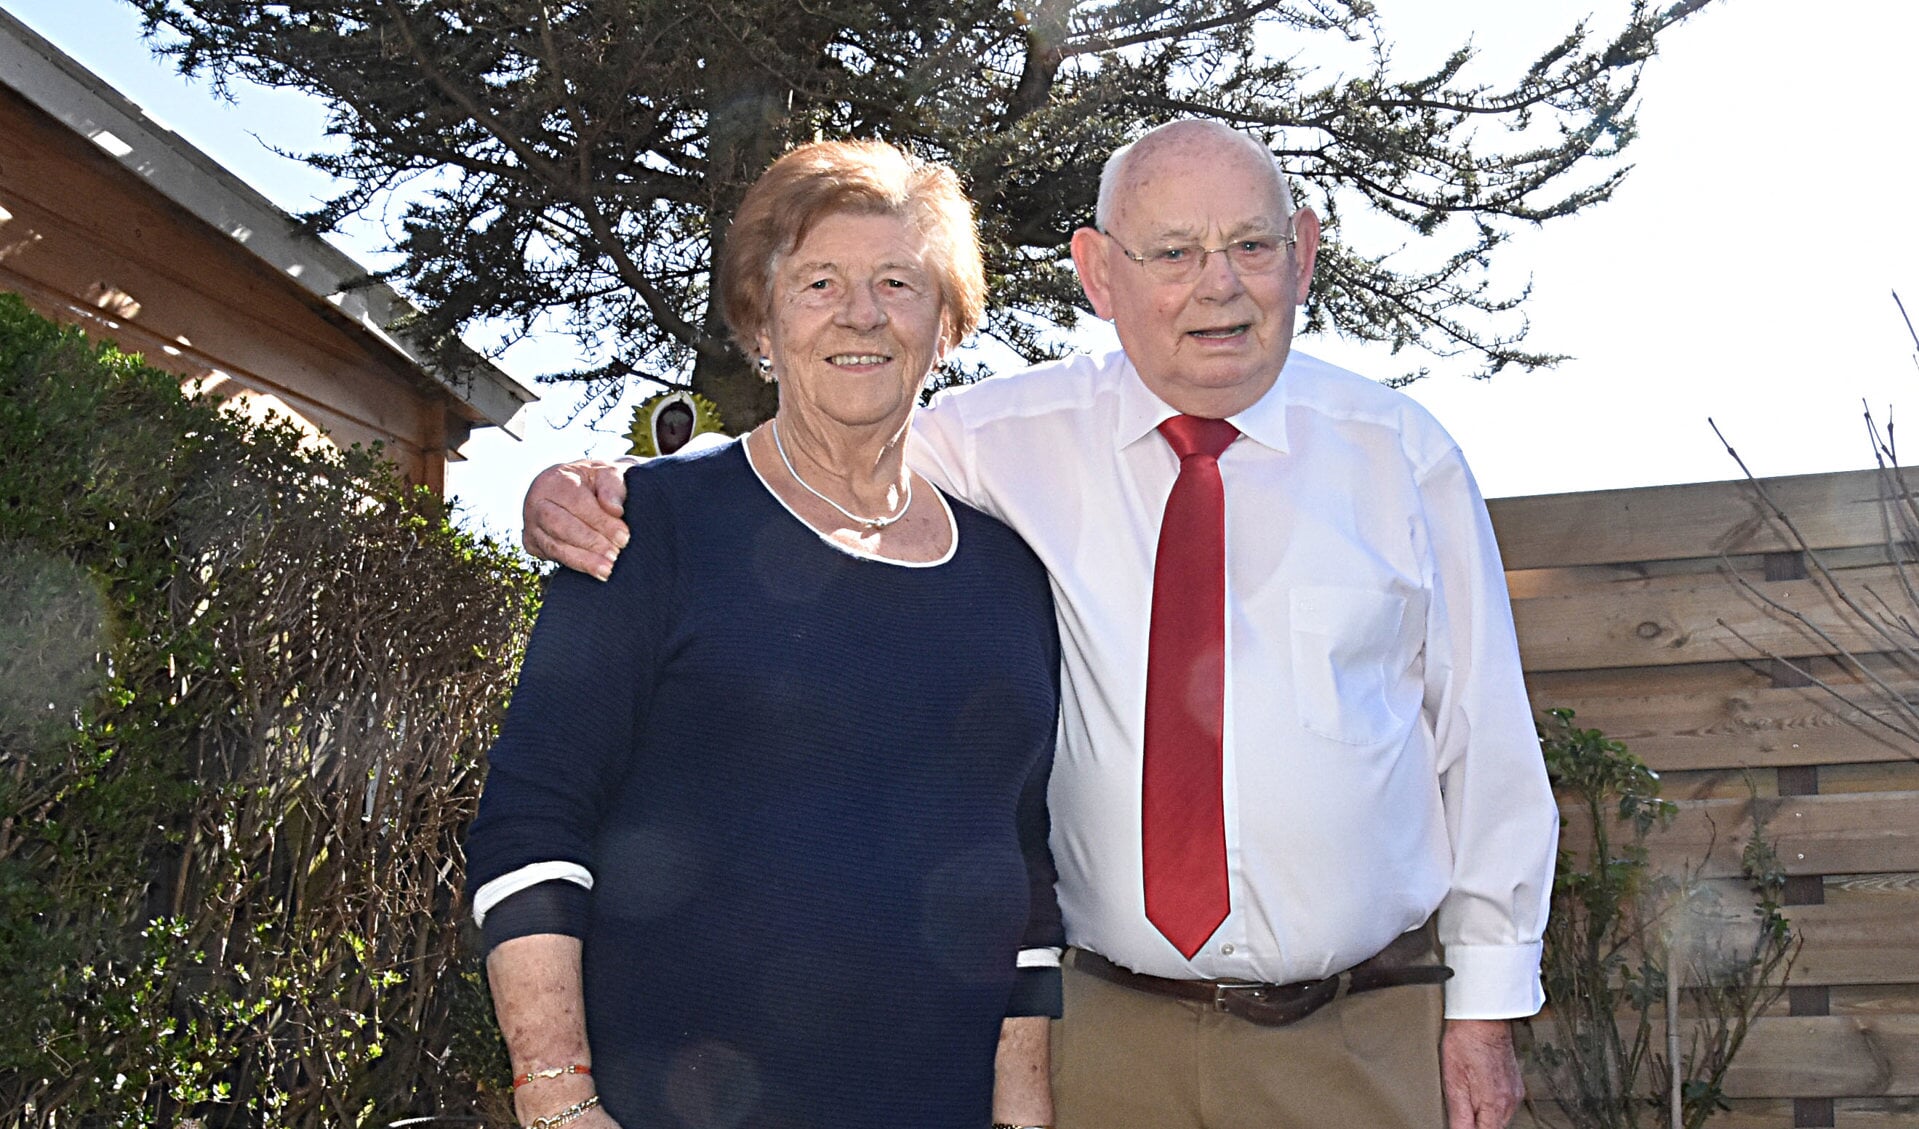 Huig en Jannie Haasnoot-Kuijt vierden hun 60-jarig huwelijksjubileum. | Foto en tekst: Piet van Kampen